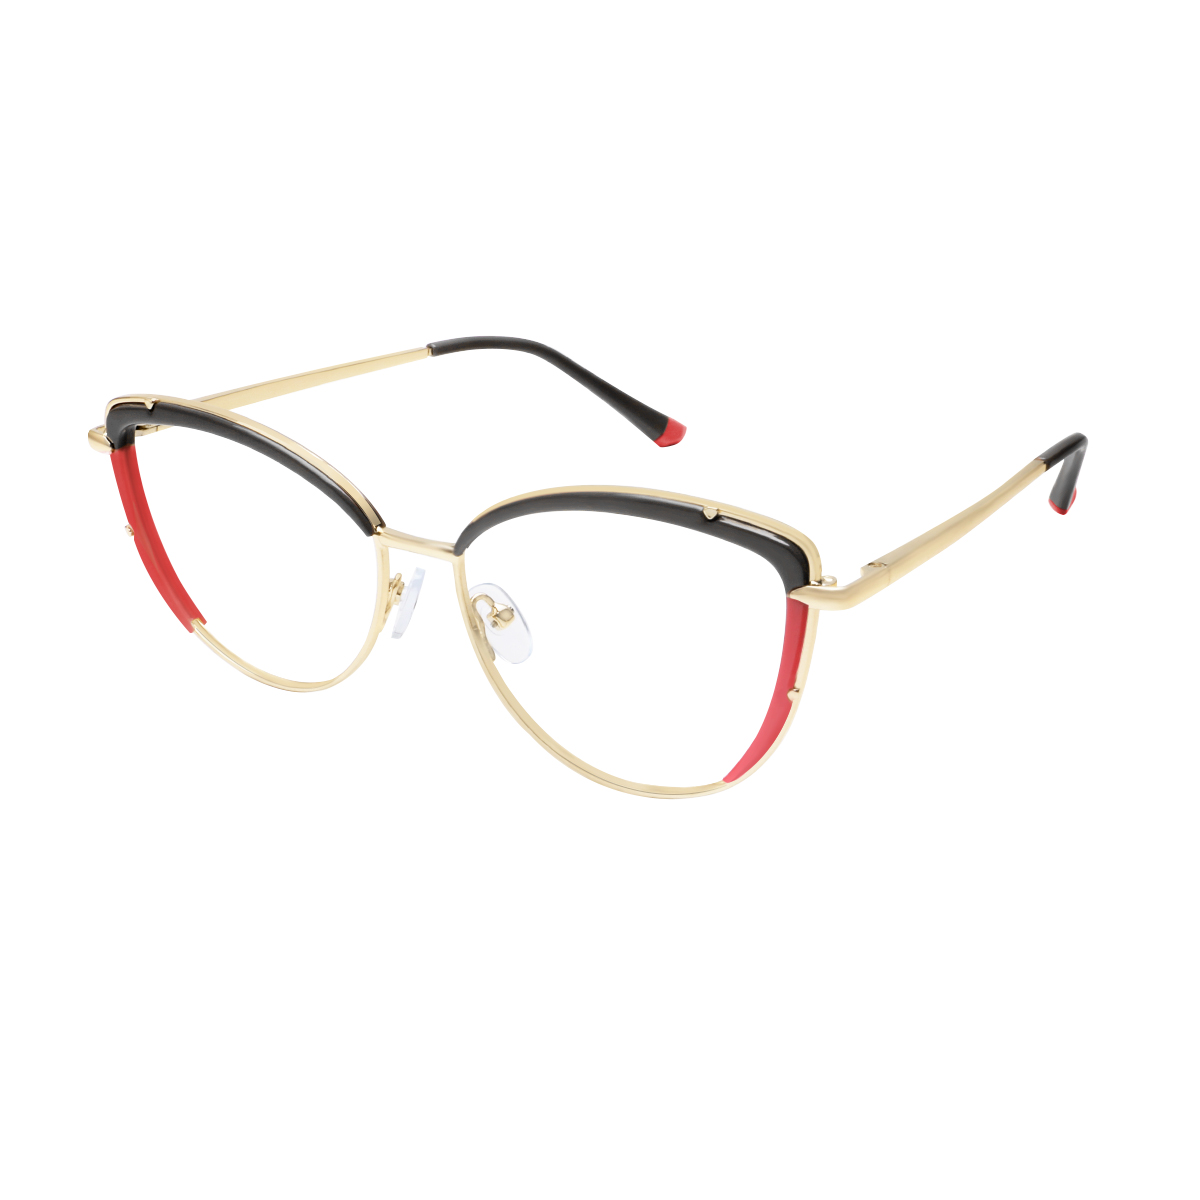 Romy - Square Black-Red Reading Glasses for Women